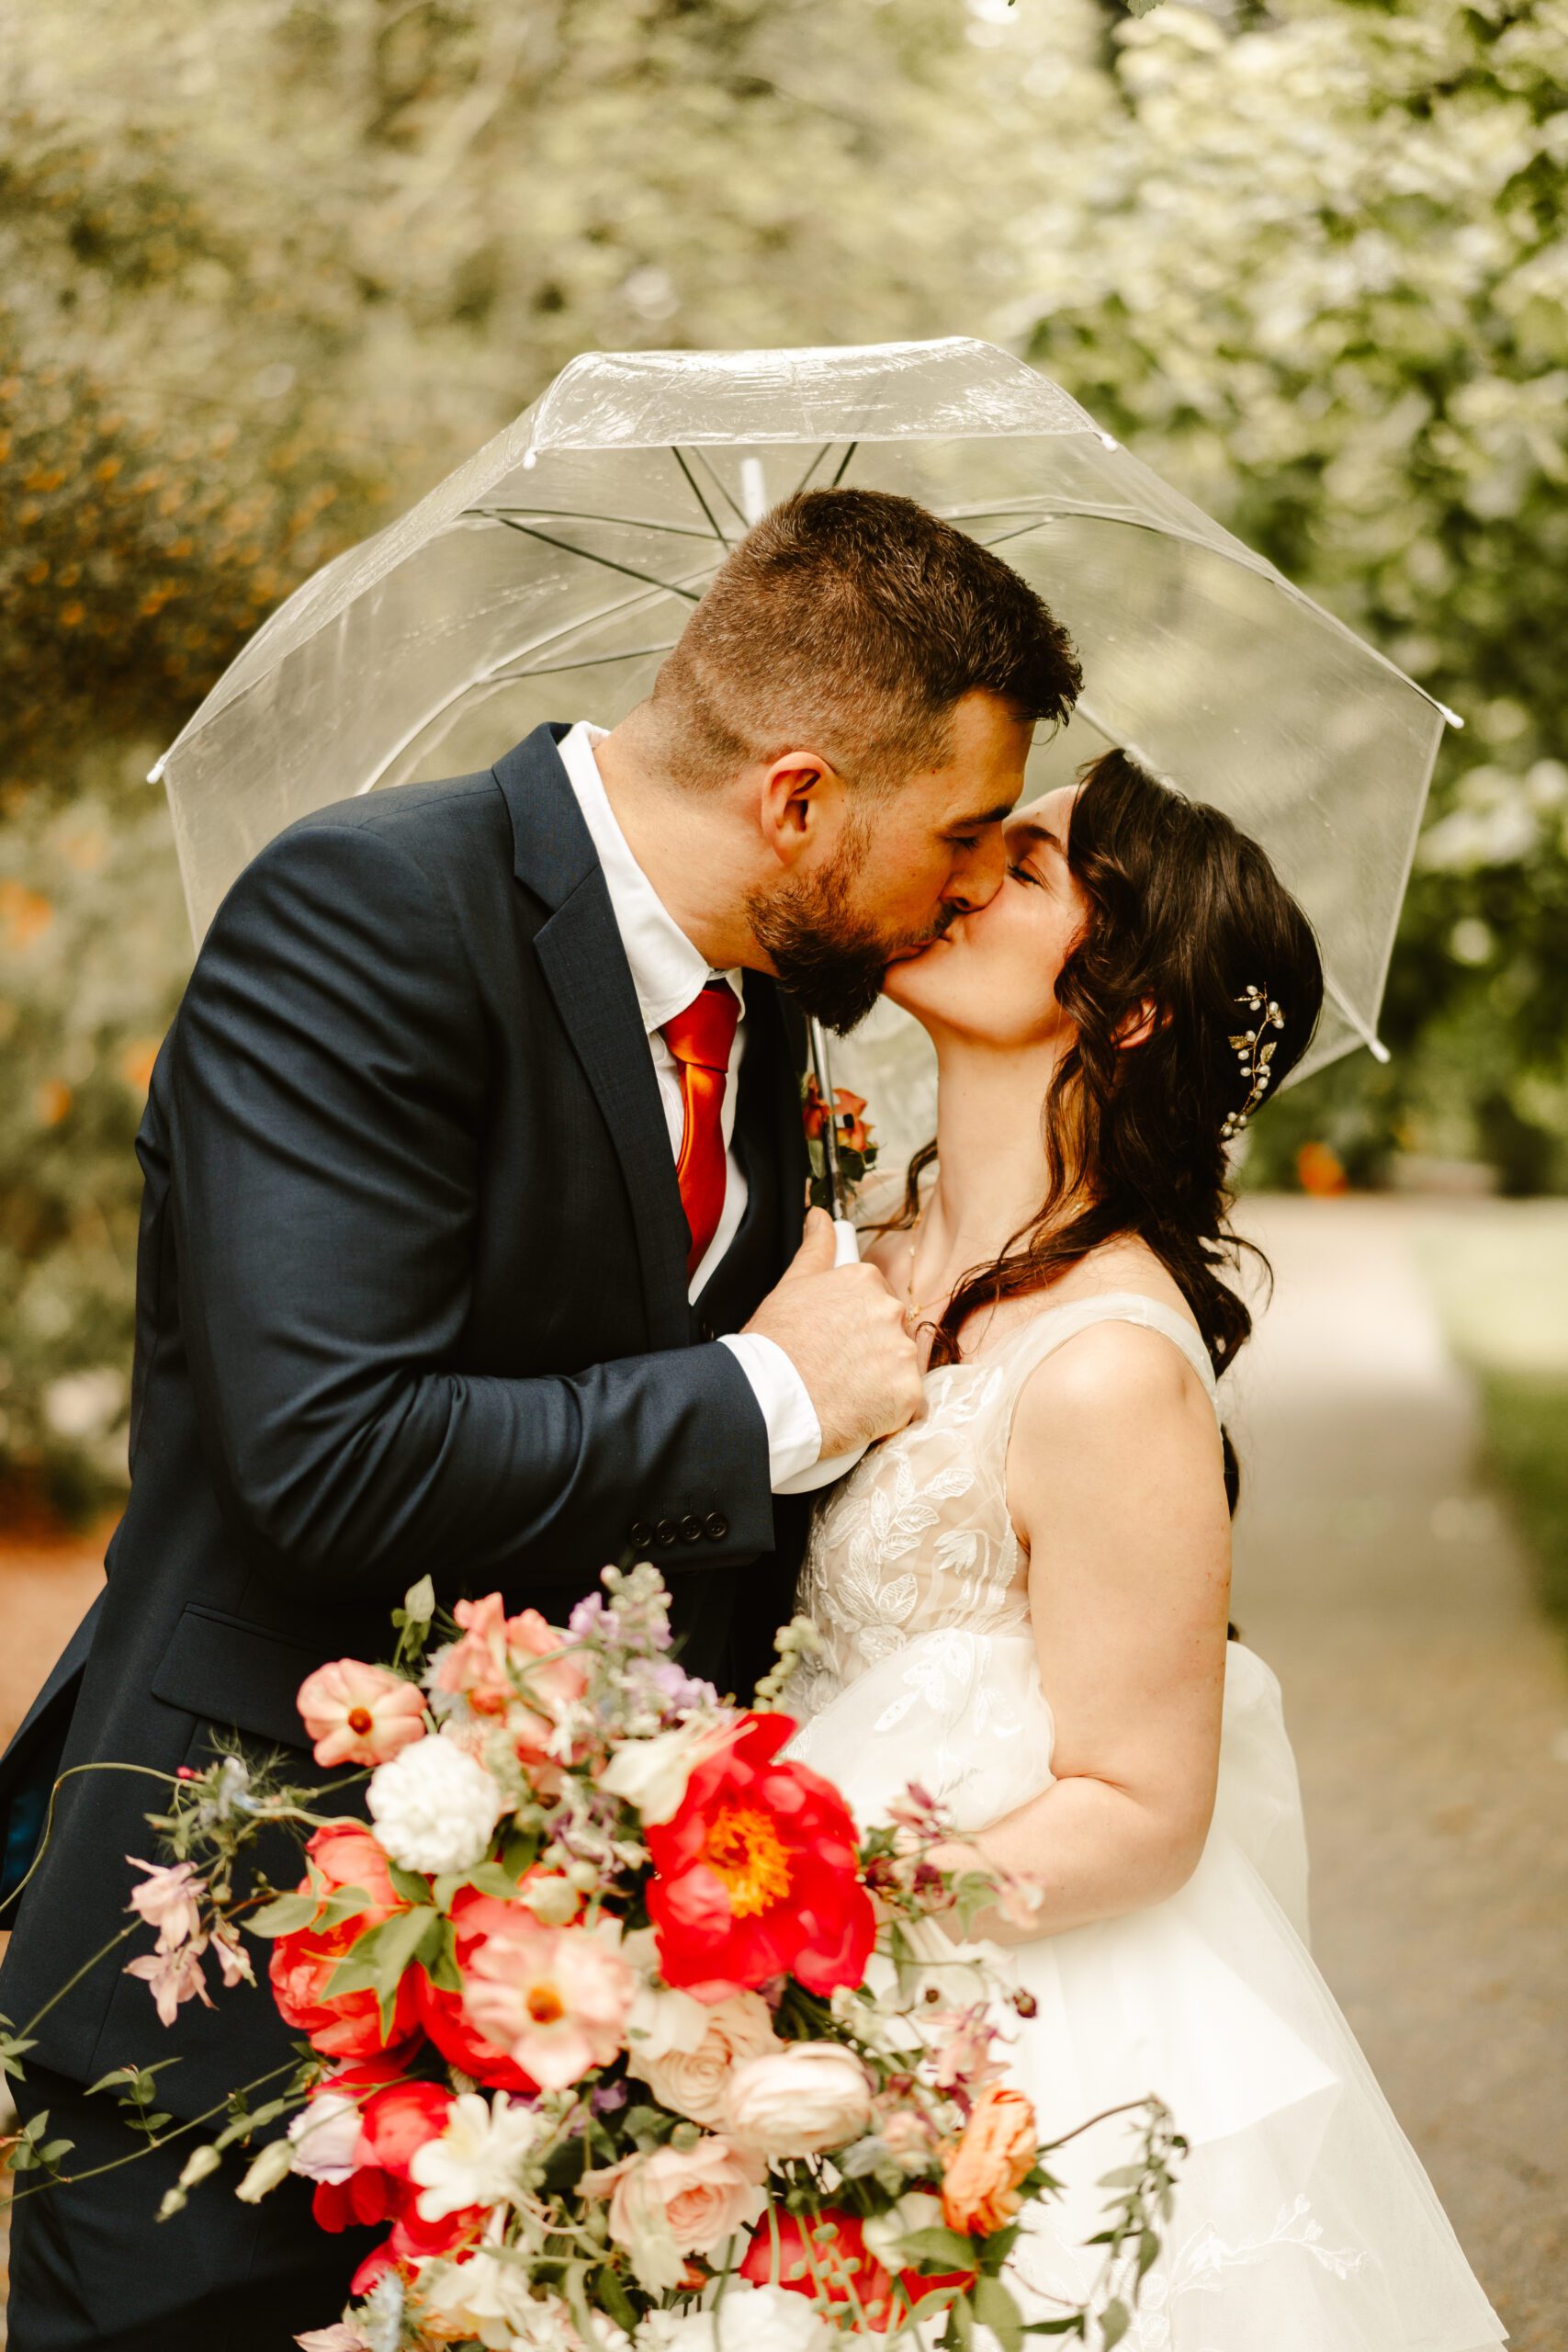 Couple kiss under umbrella at hazlehead park wedding, aberdeen